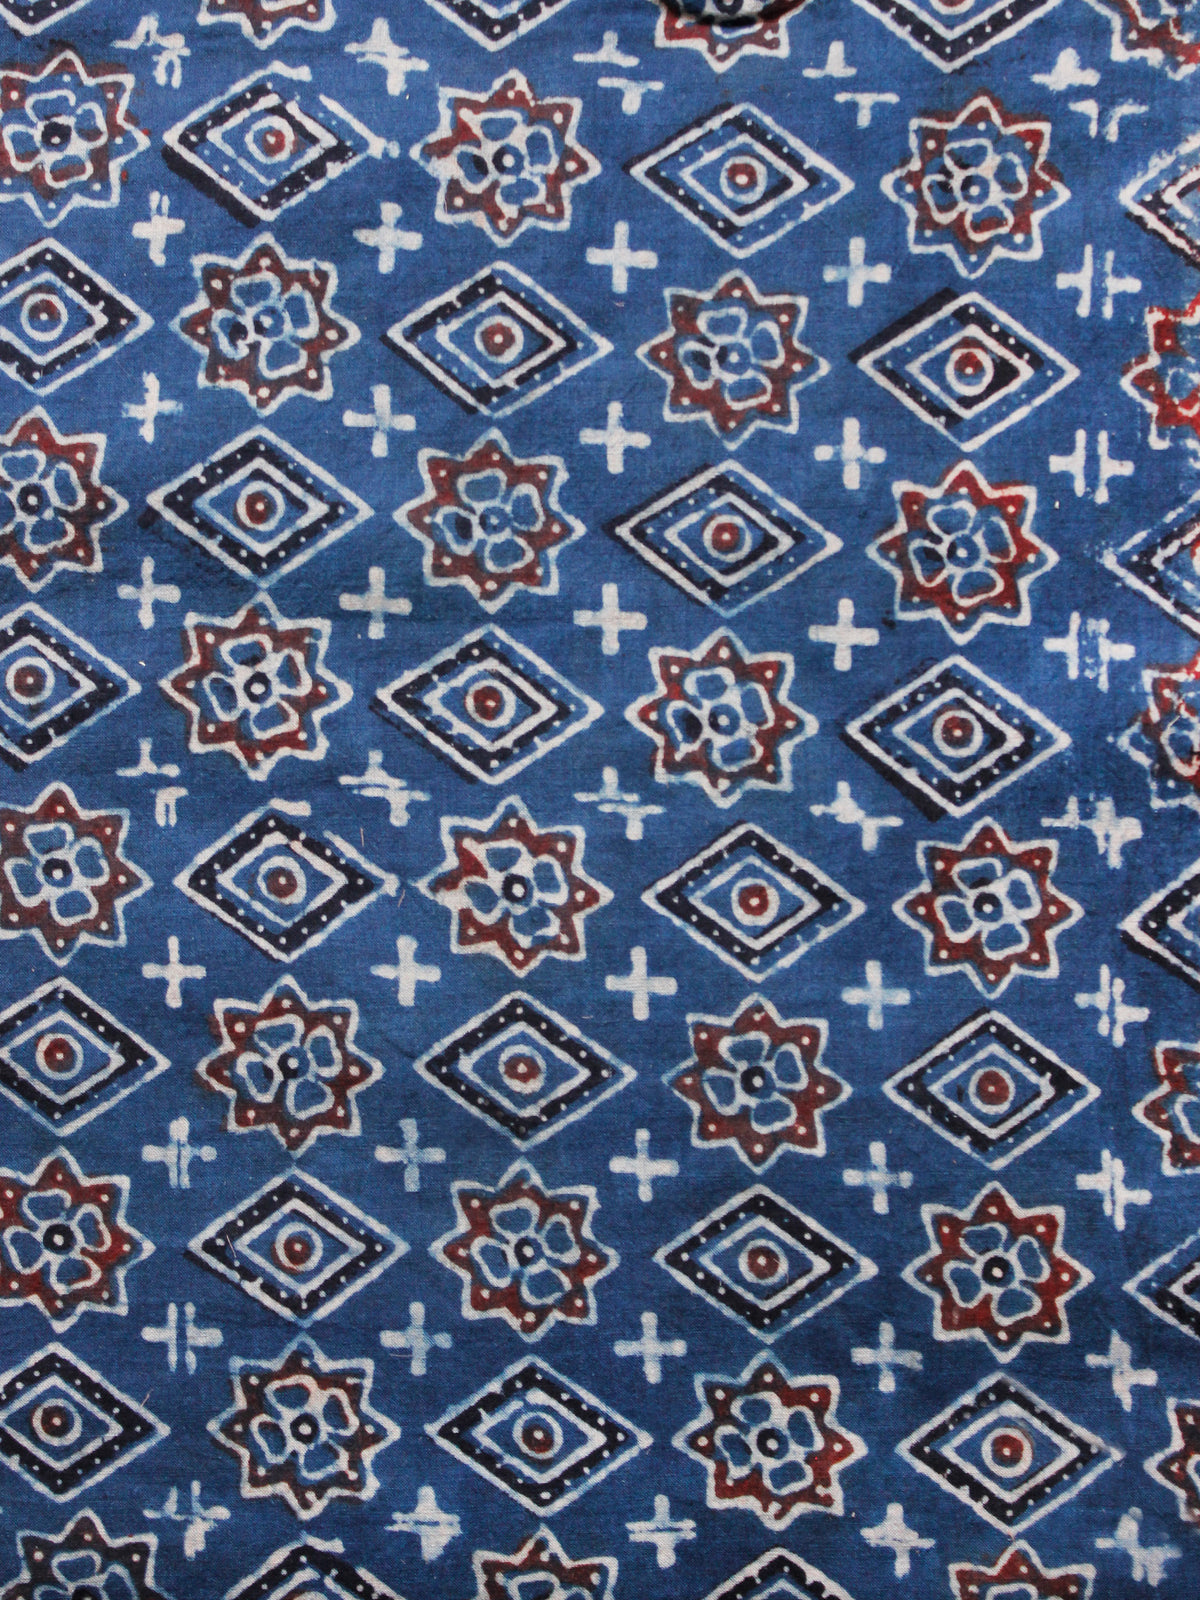 Indigo Rust Black White Ajrakh Hand Block Printed Cotton Fabric Per Meter - F003F1585